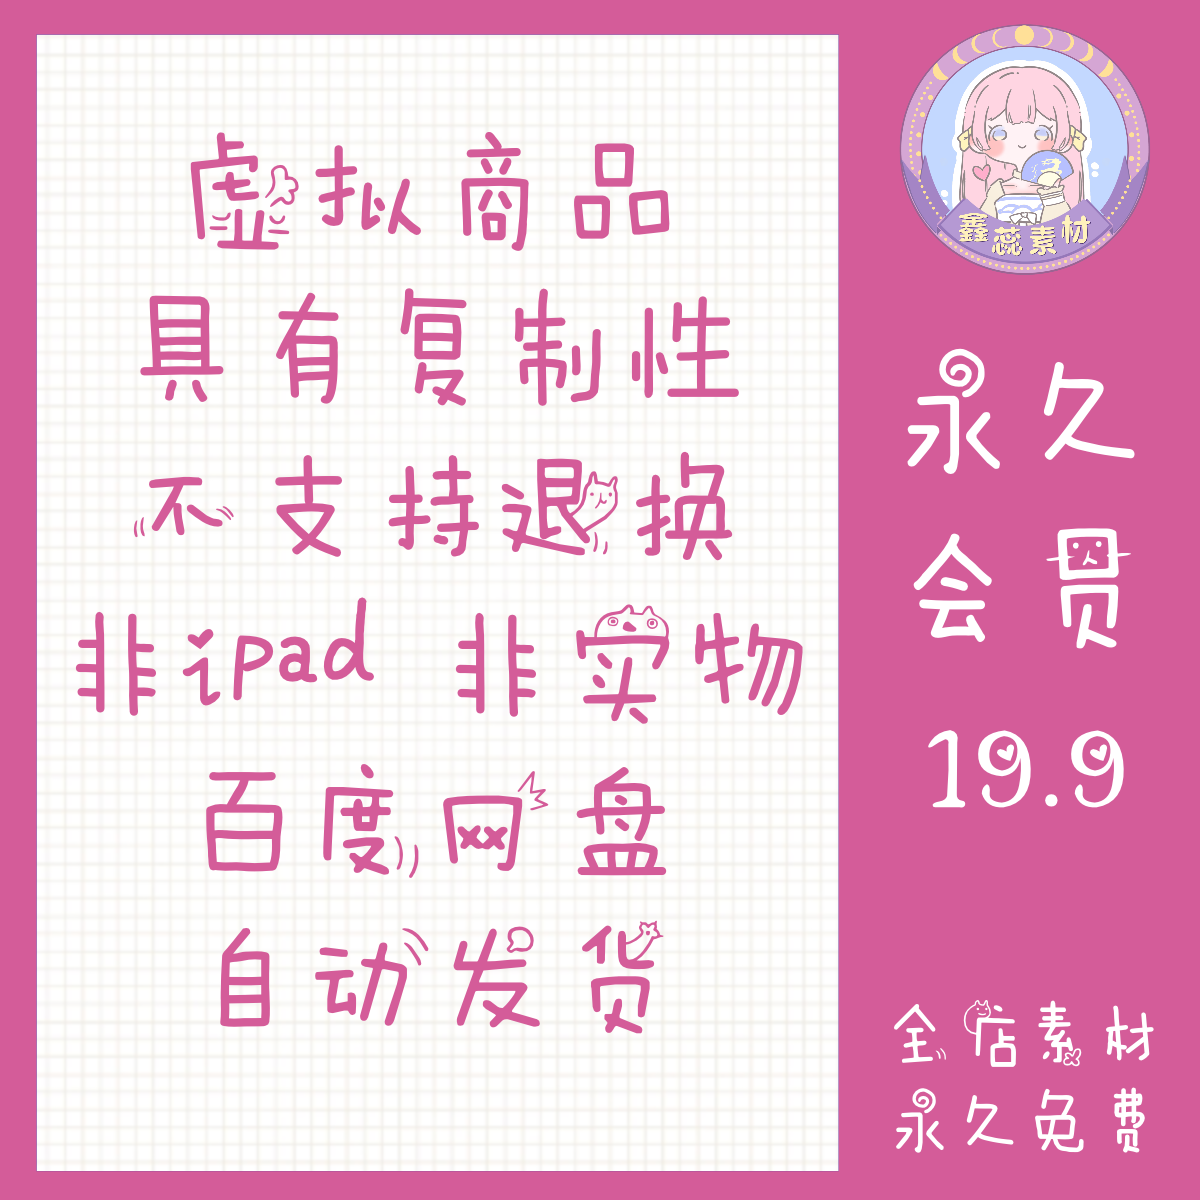 ps/procreate中文字体素材传统小纂甲骨文古风书写字体素材 - 图1